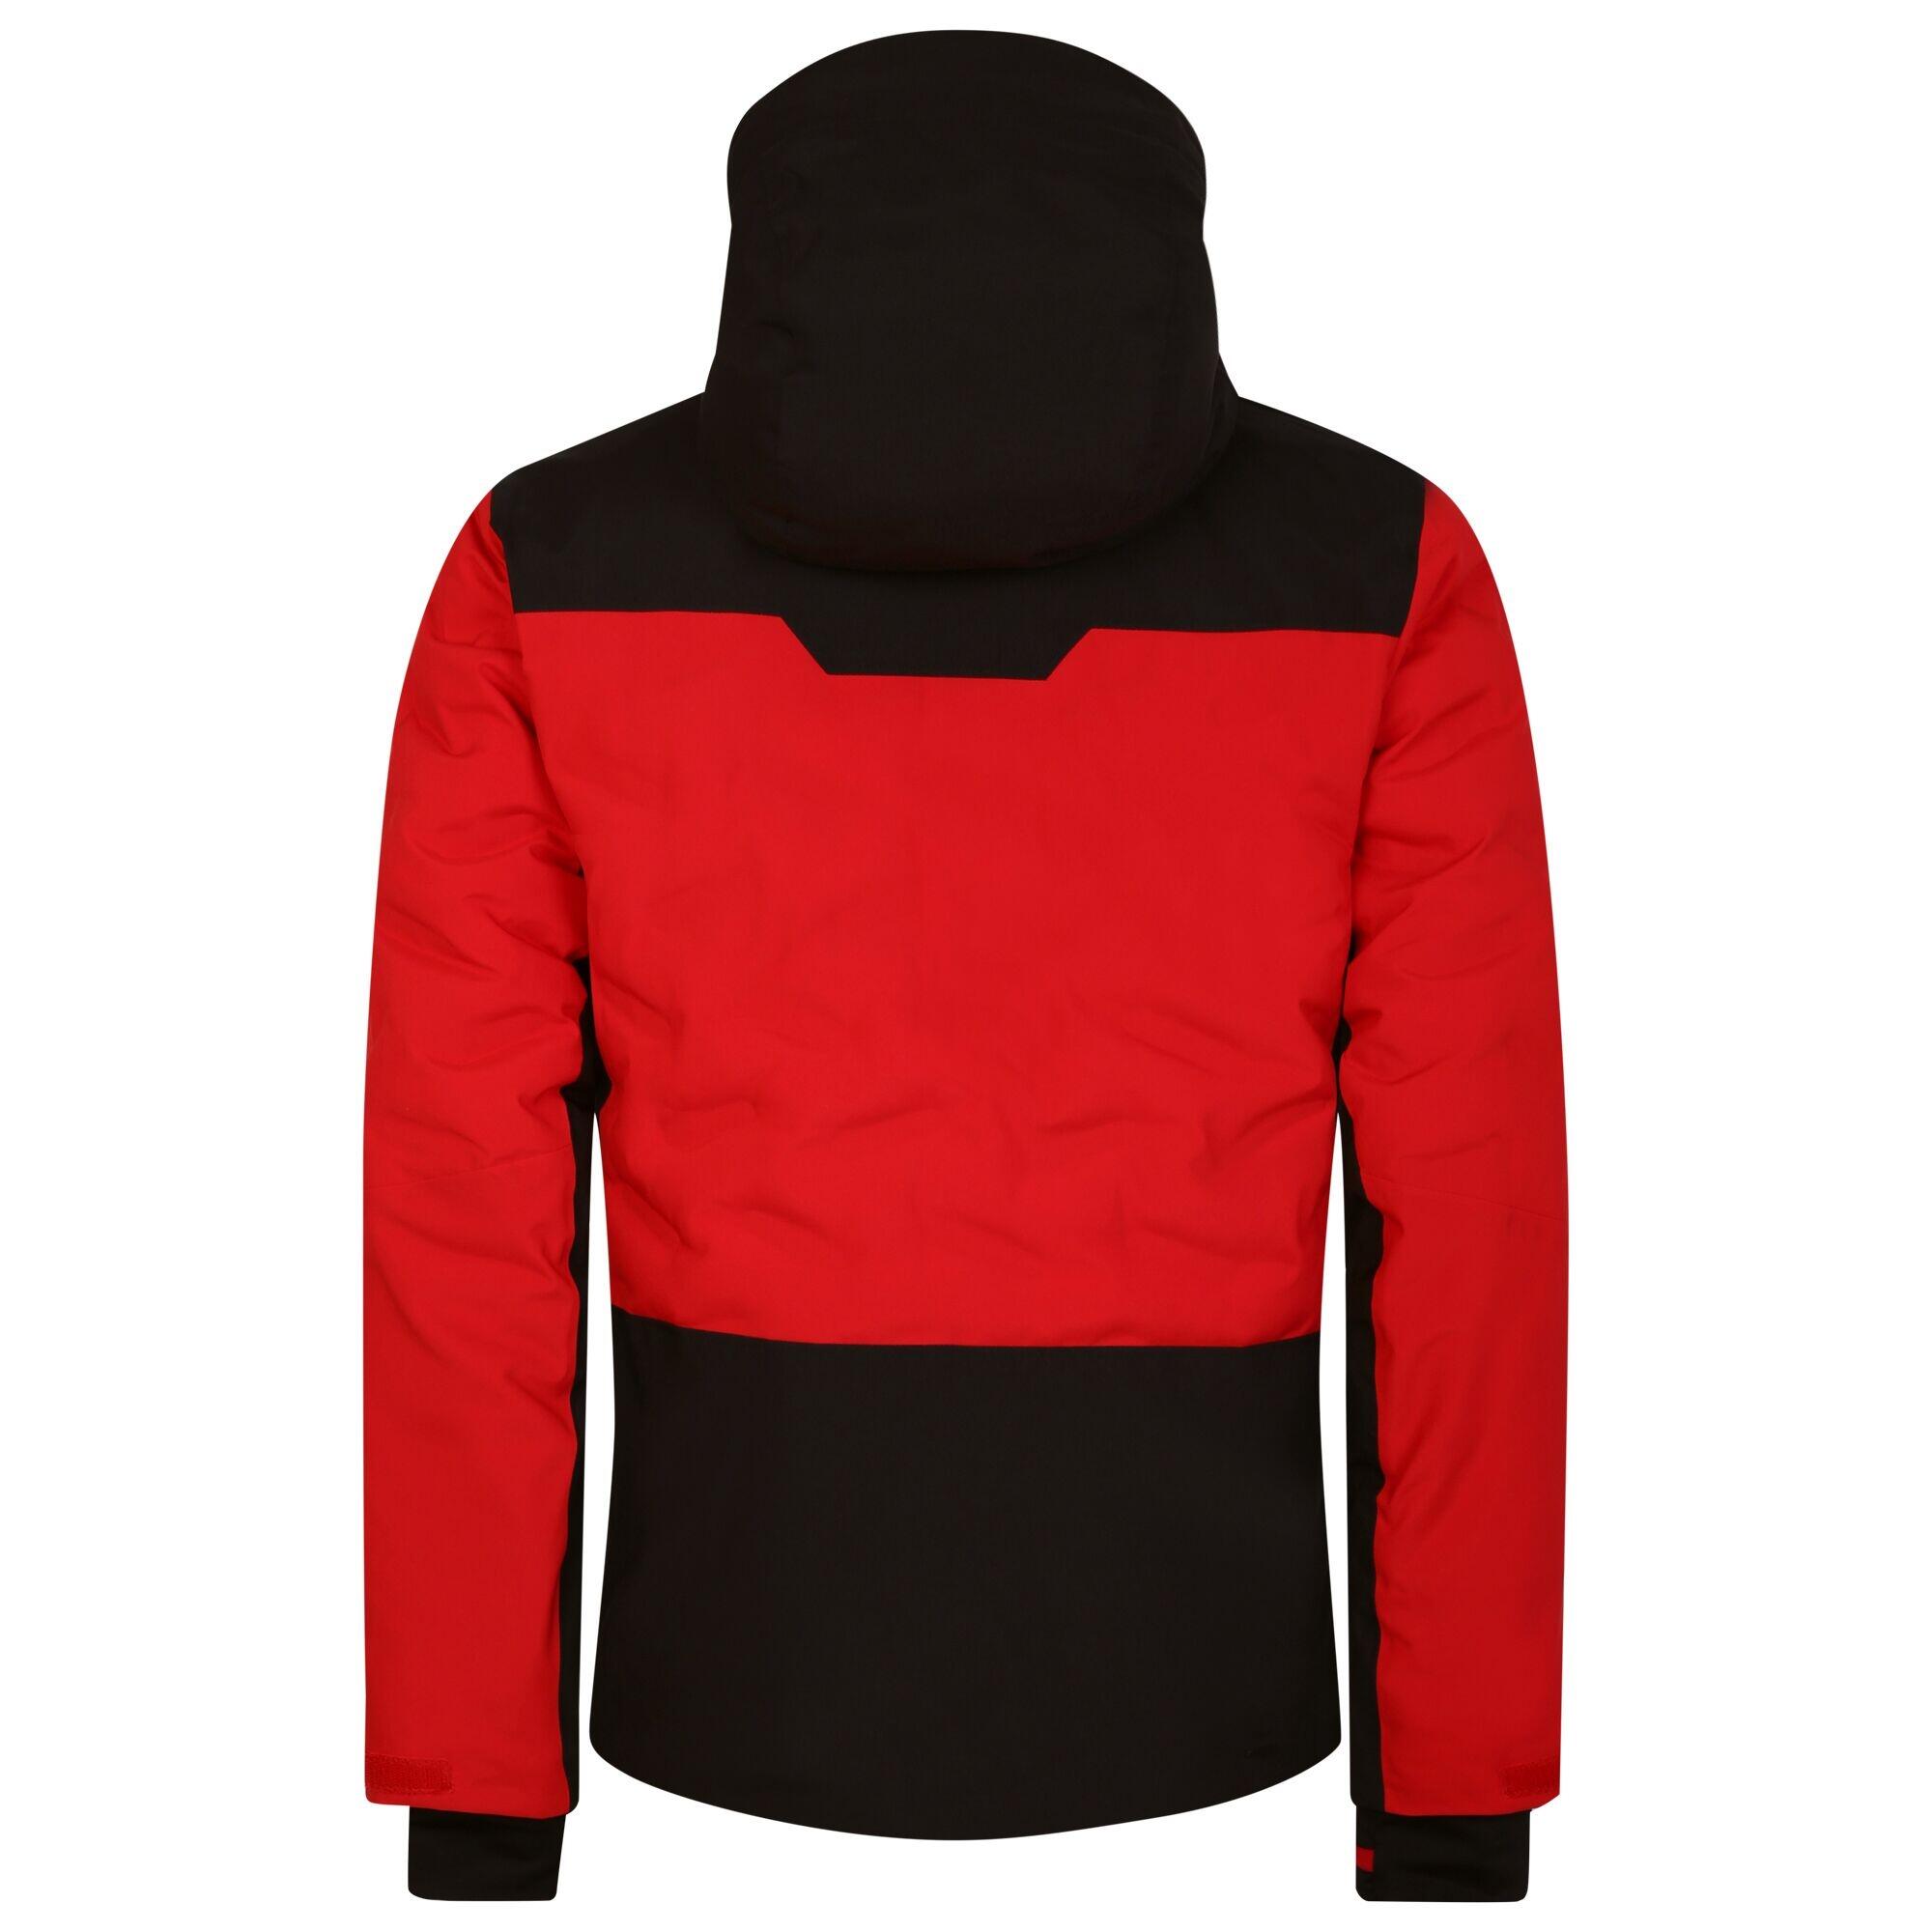 Mens Aerials Ski Jacket (Danger Red/Black) 2/5